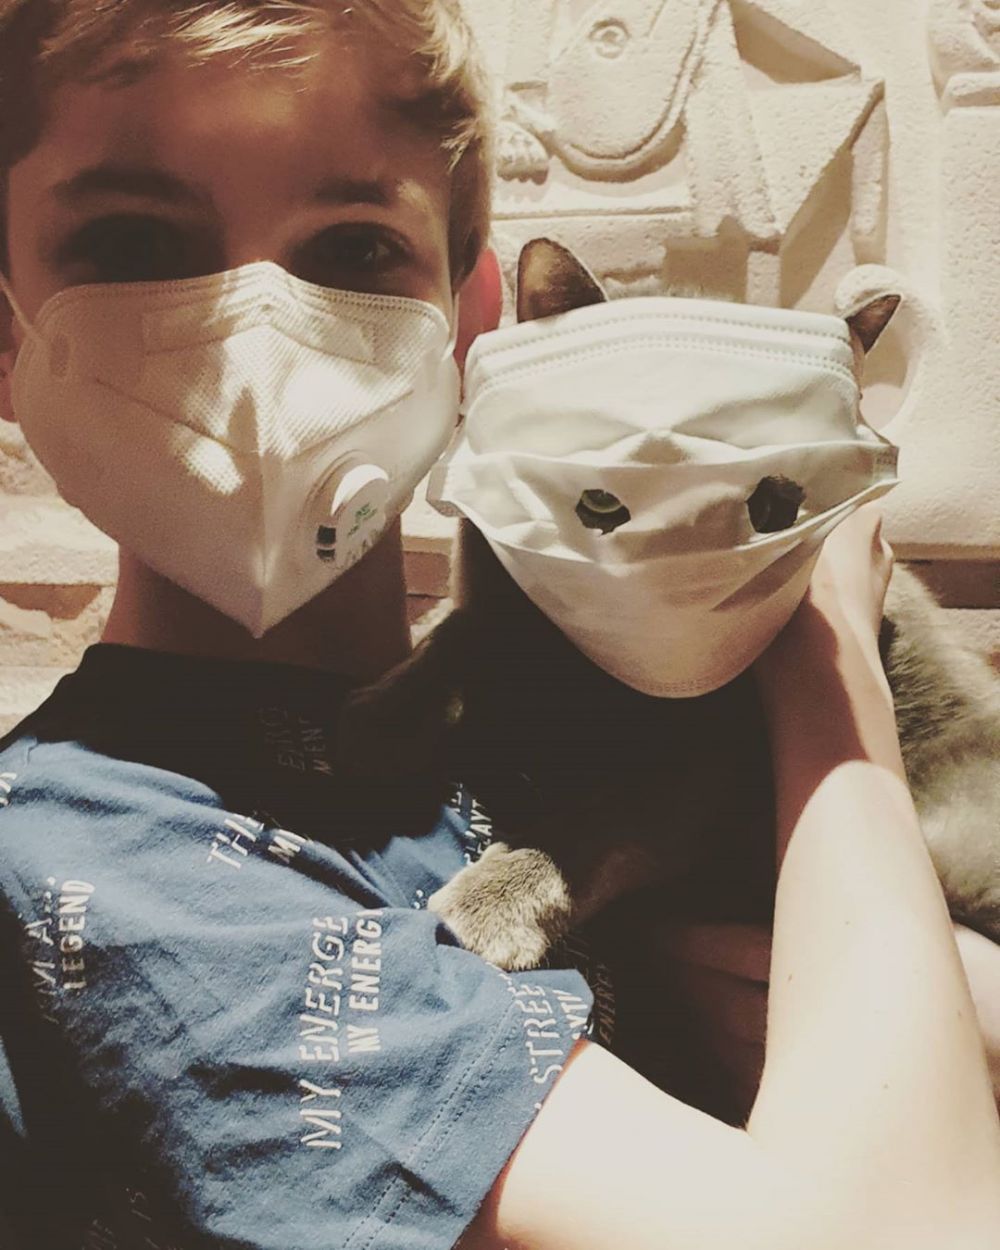 10 Penampakan kucing pakai masker ini bikin gemas sekaligus ngakak